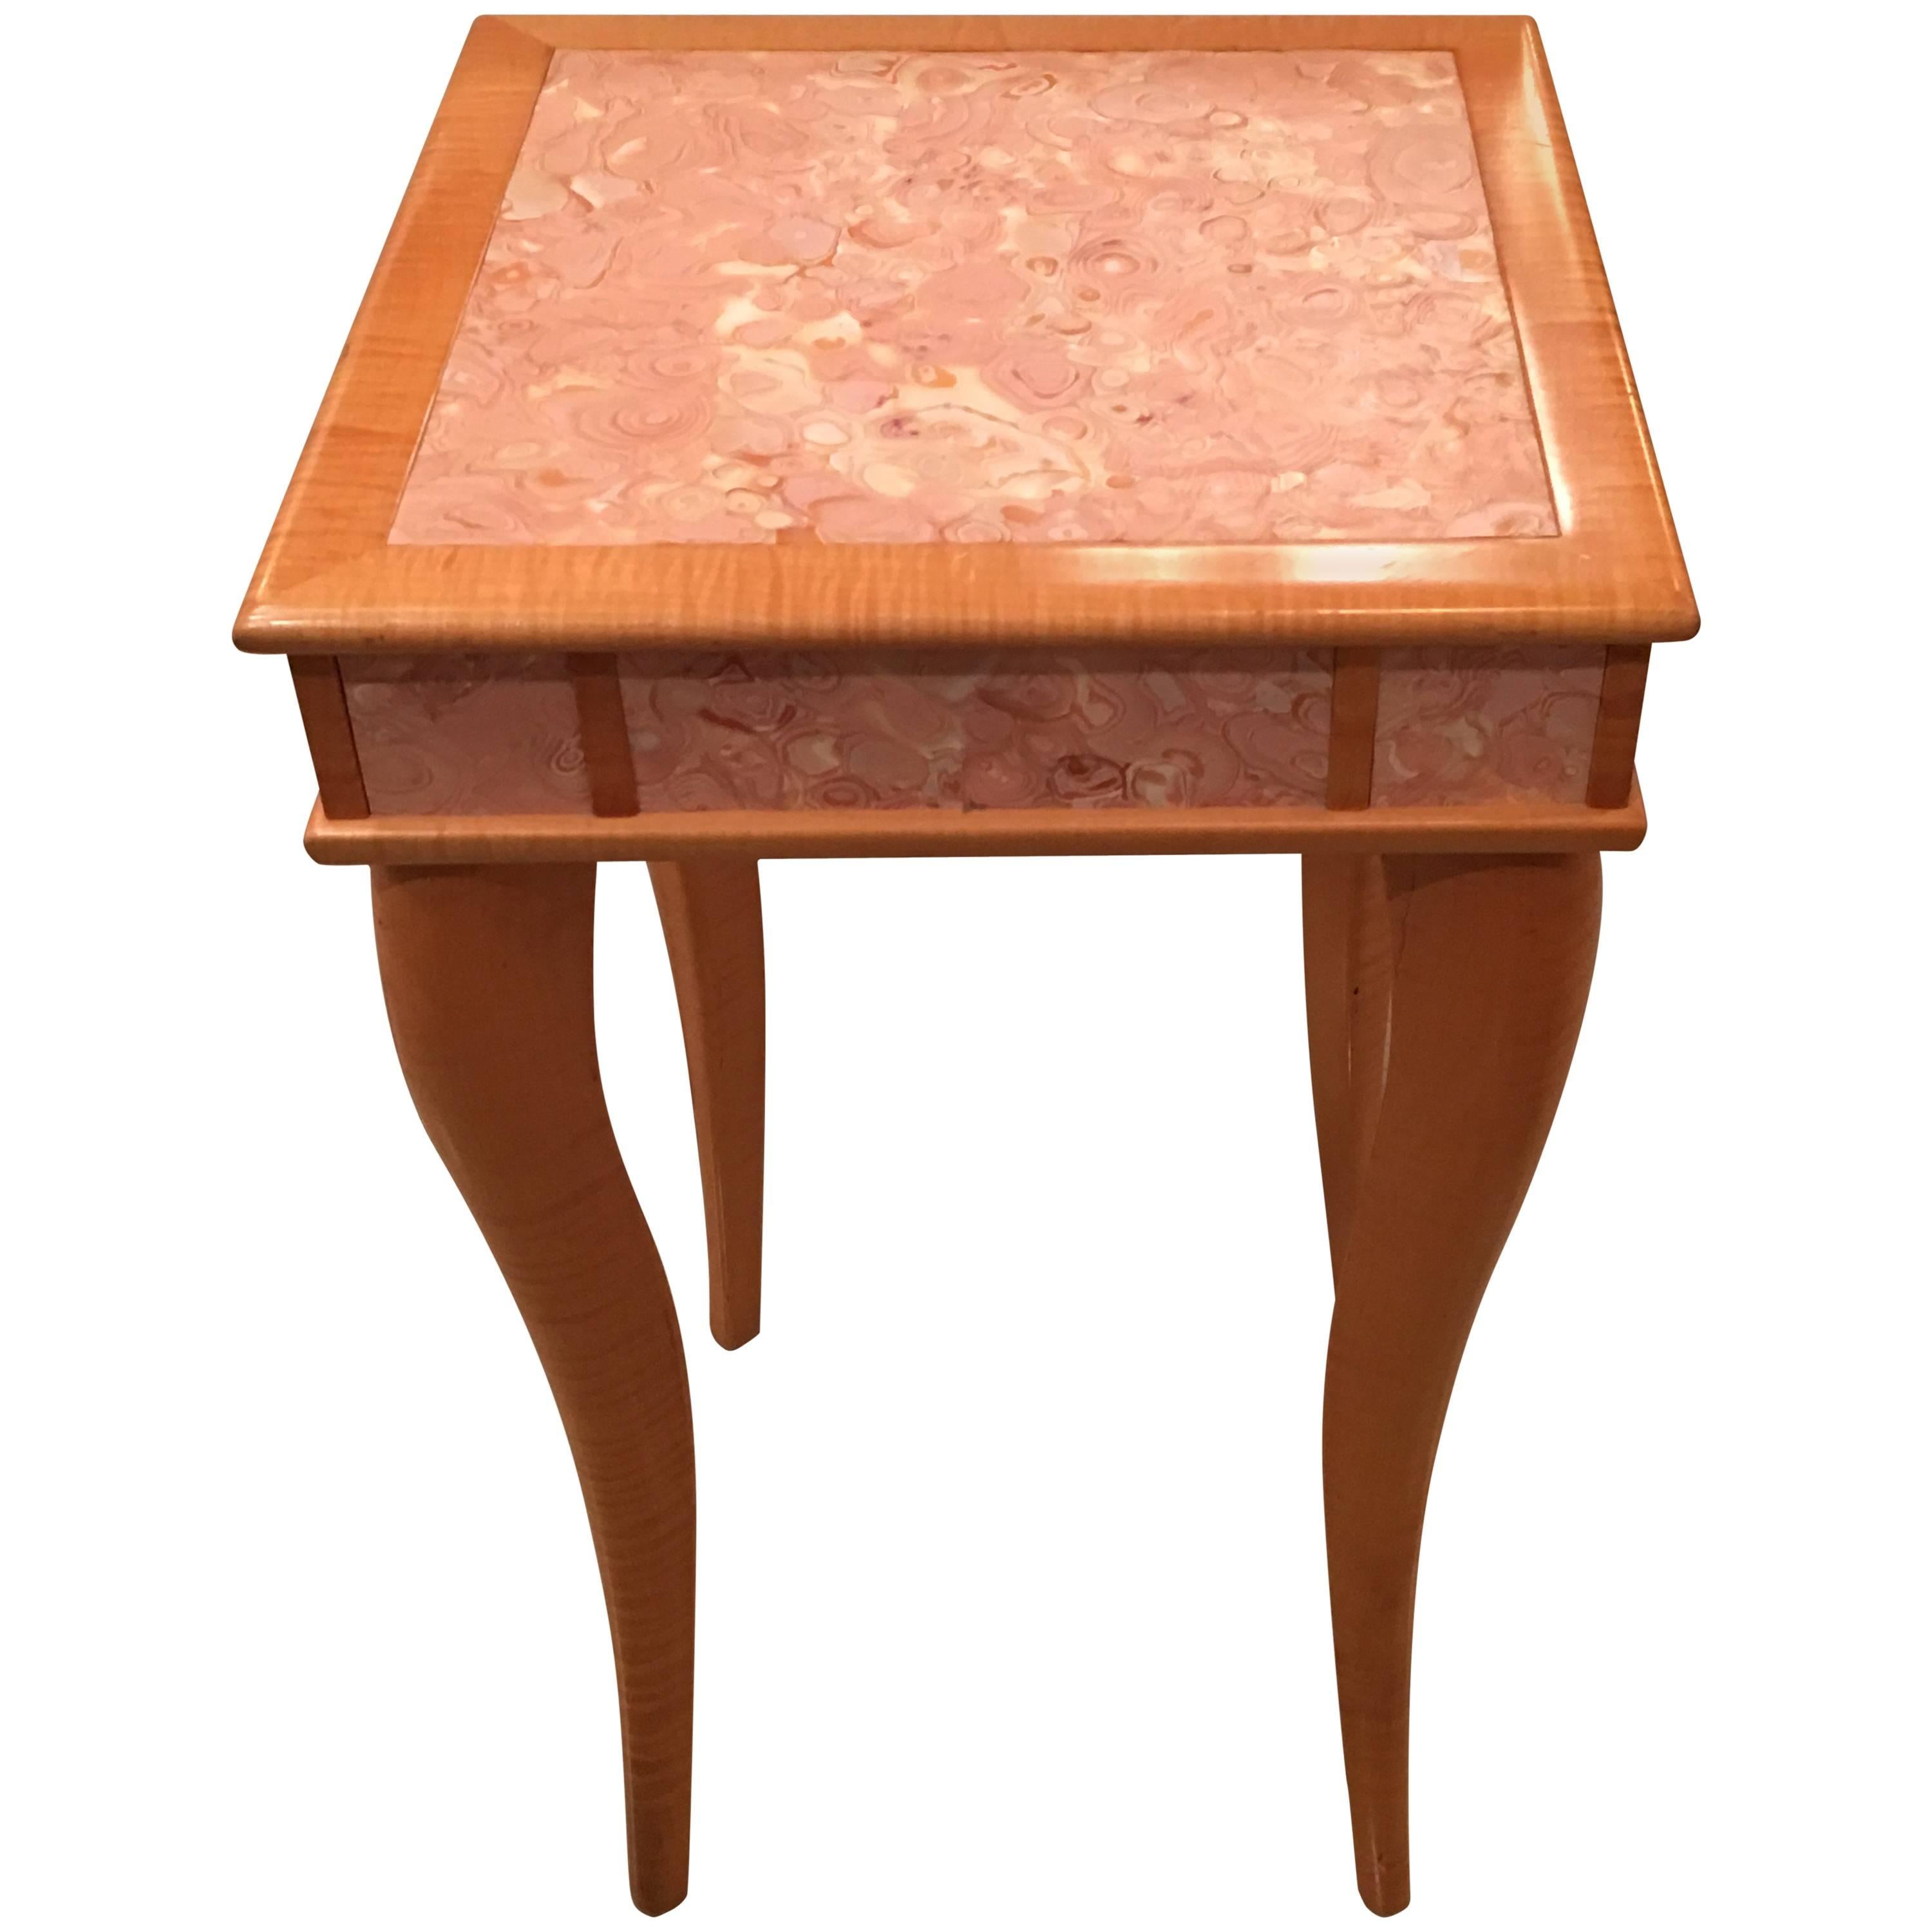 Table d'appoint vintage en bois d'érable piqué et pierre d'agate rose avec motif oiseau, vintage